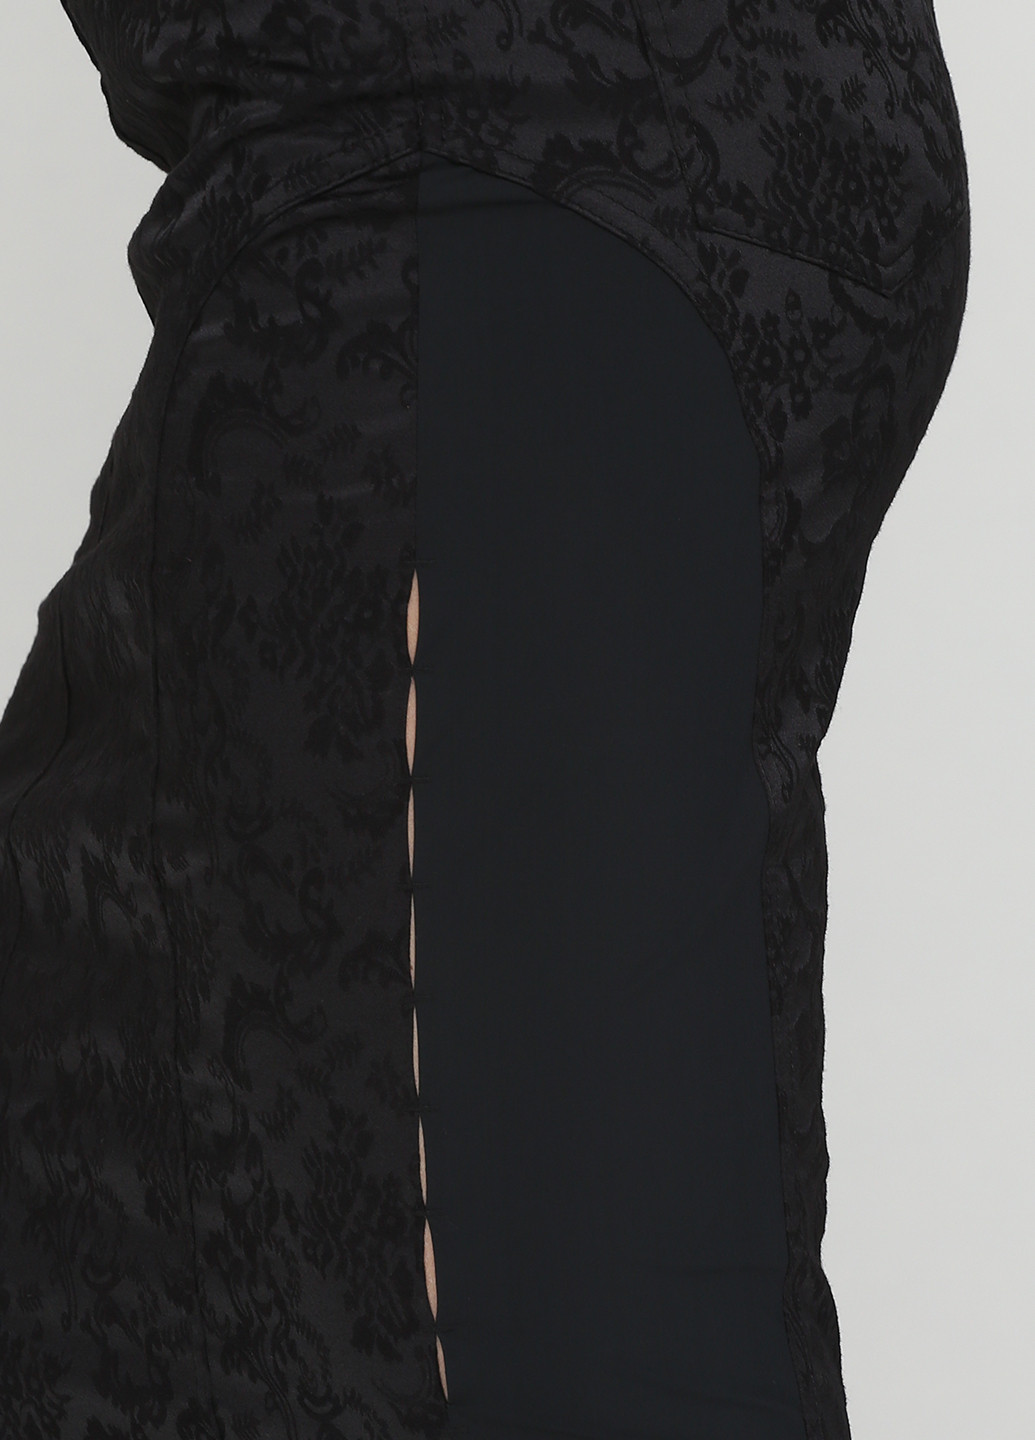 Черная кэжуал цветочной расцветки юбка Sassofono карандаш